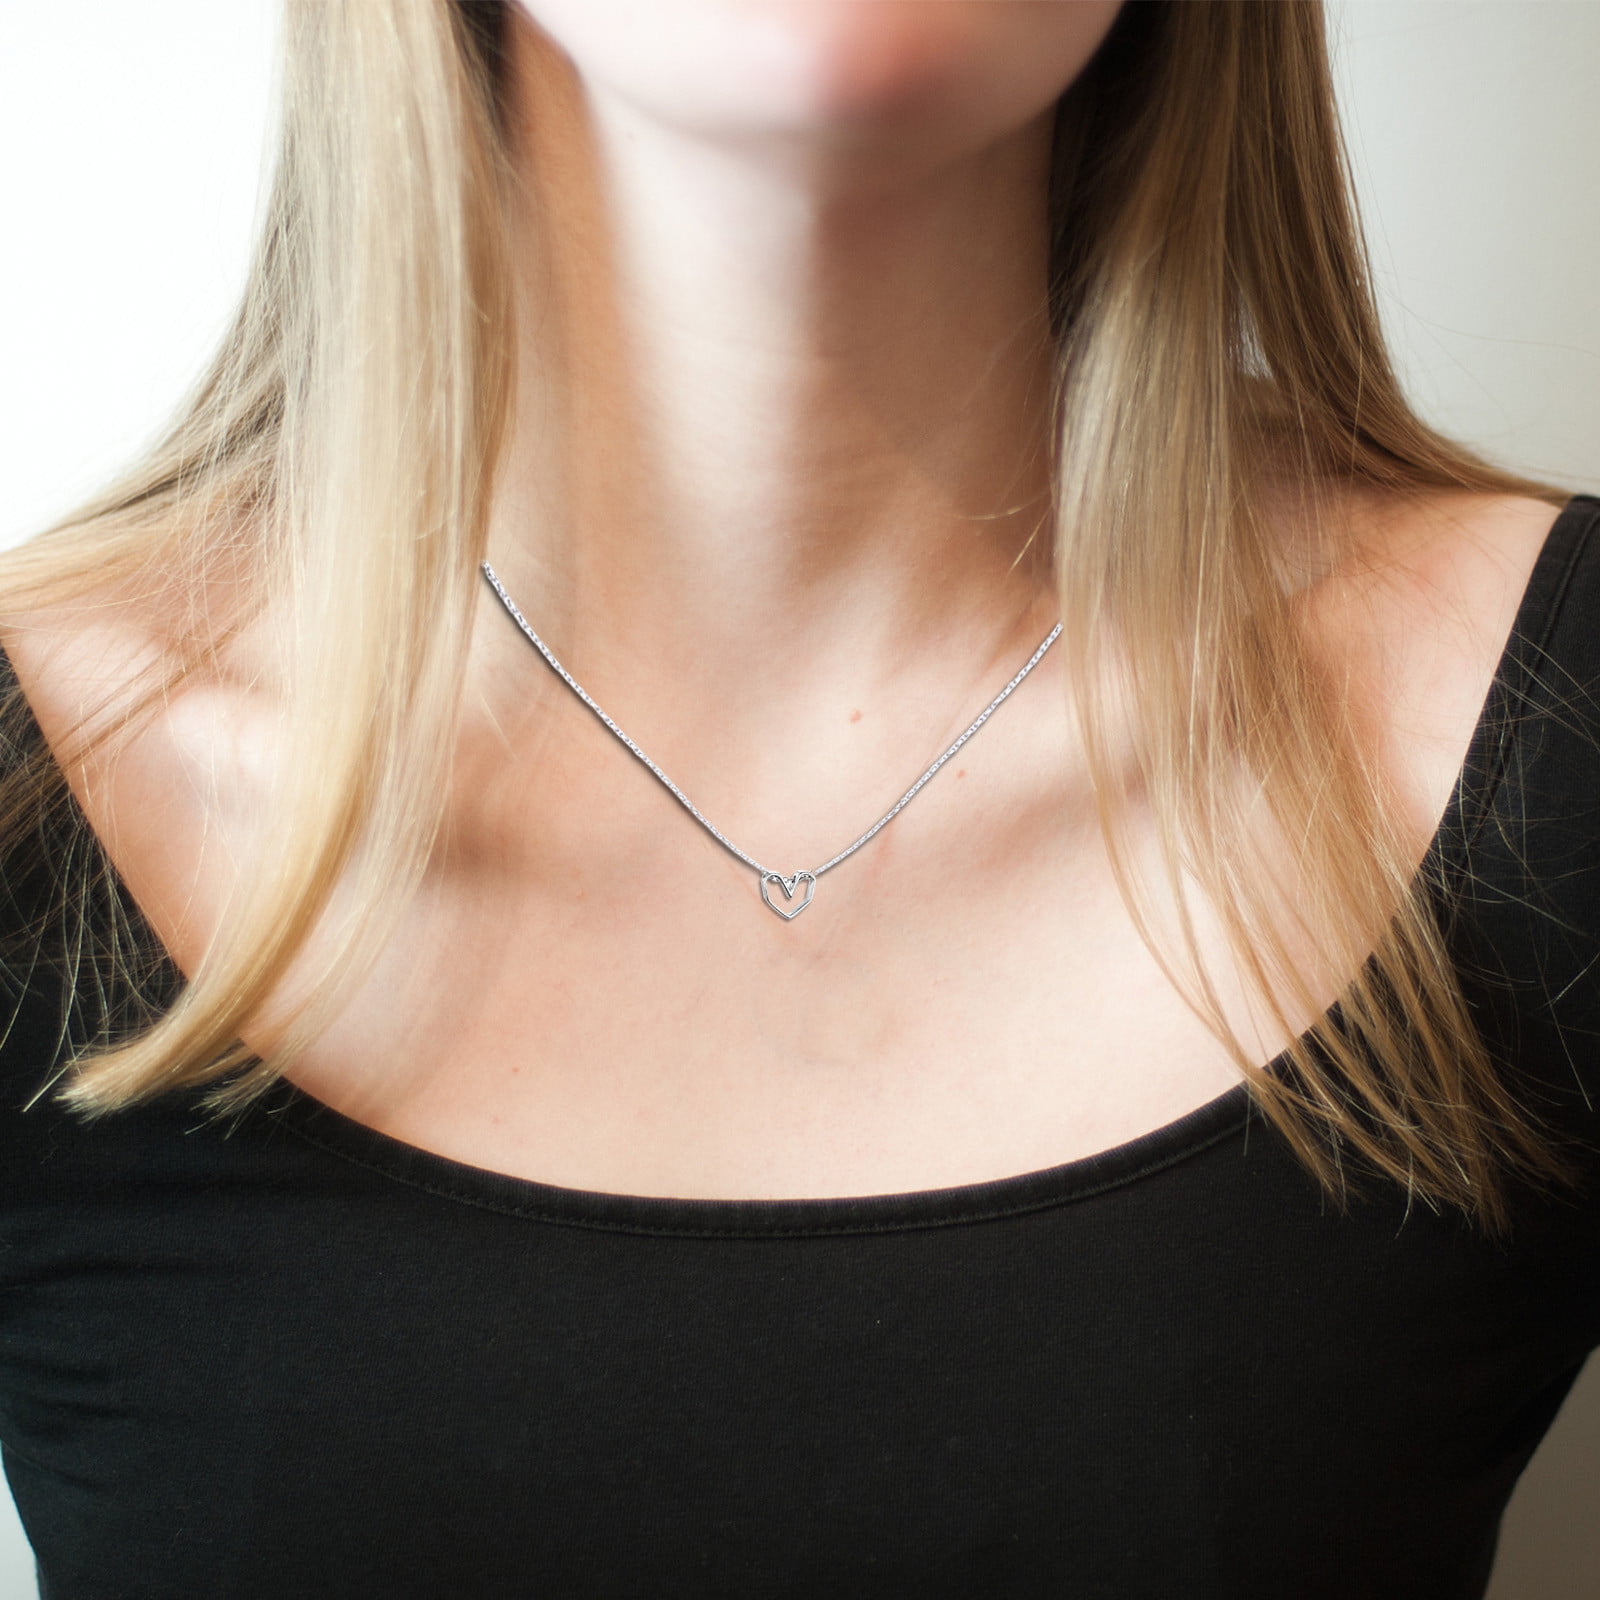 Sun Pendant Silver Swirl Necklace Small - FantaSea Jewelry